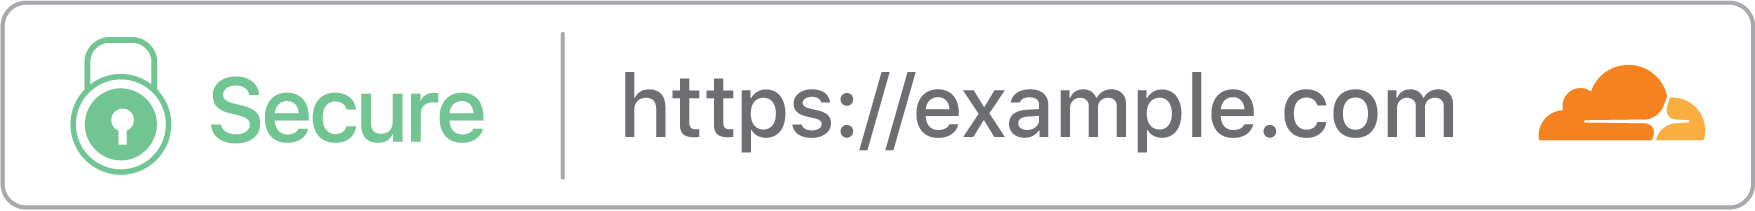 website with HTTPS